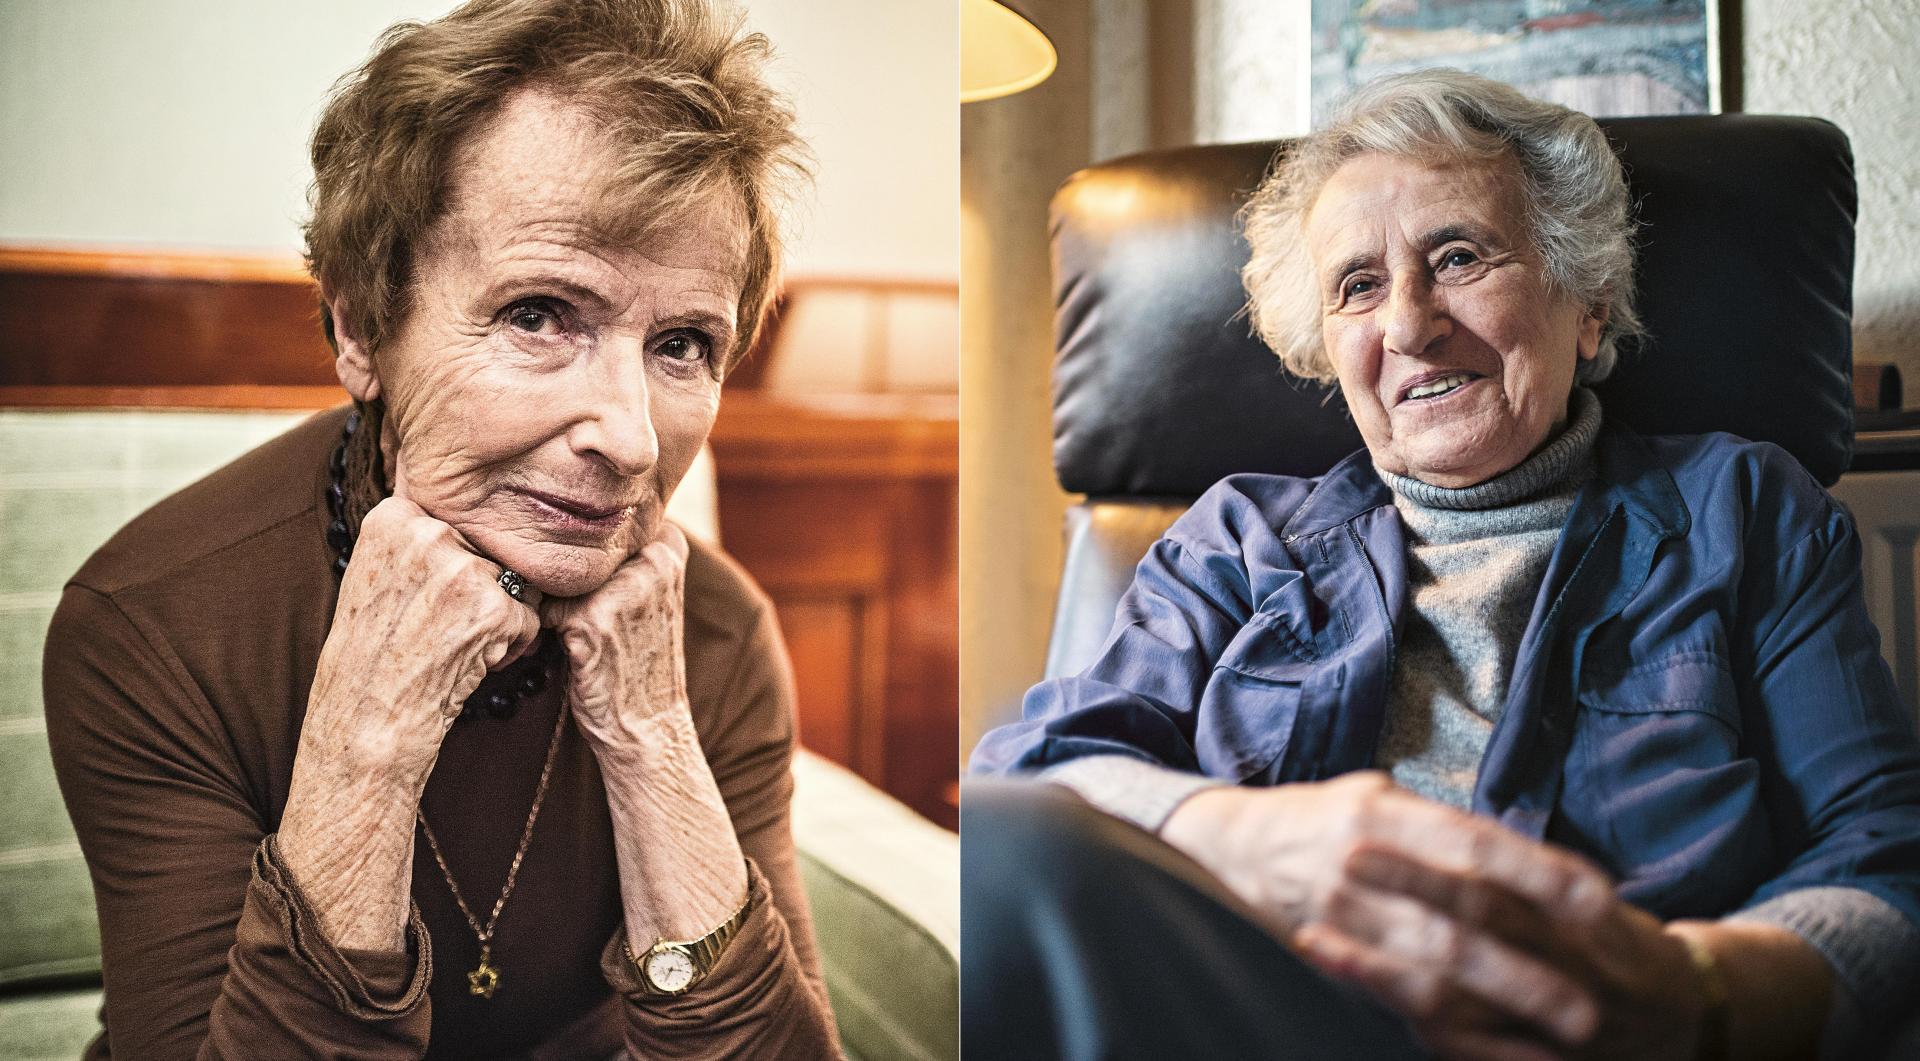 Portraits of Renate Harpprecht and Anita Lasker Wallfisch